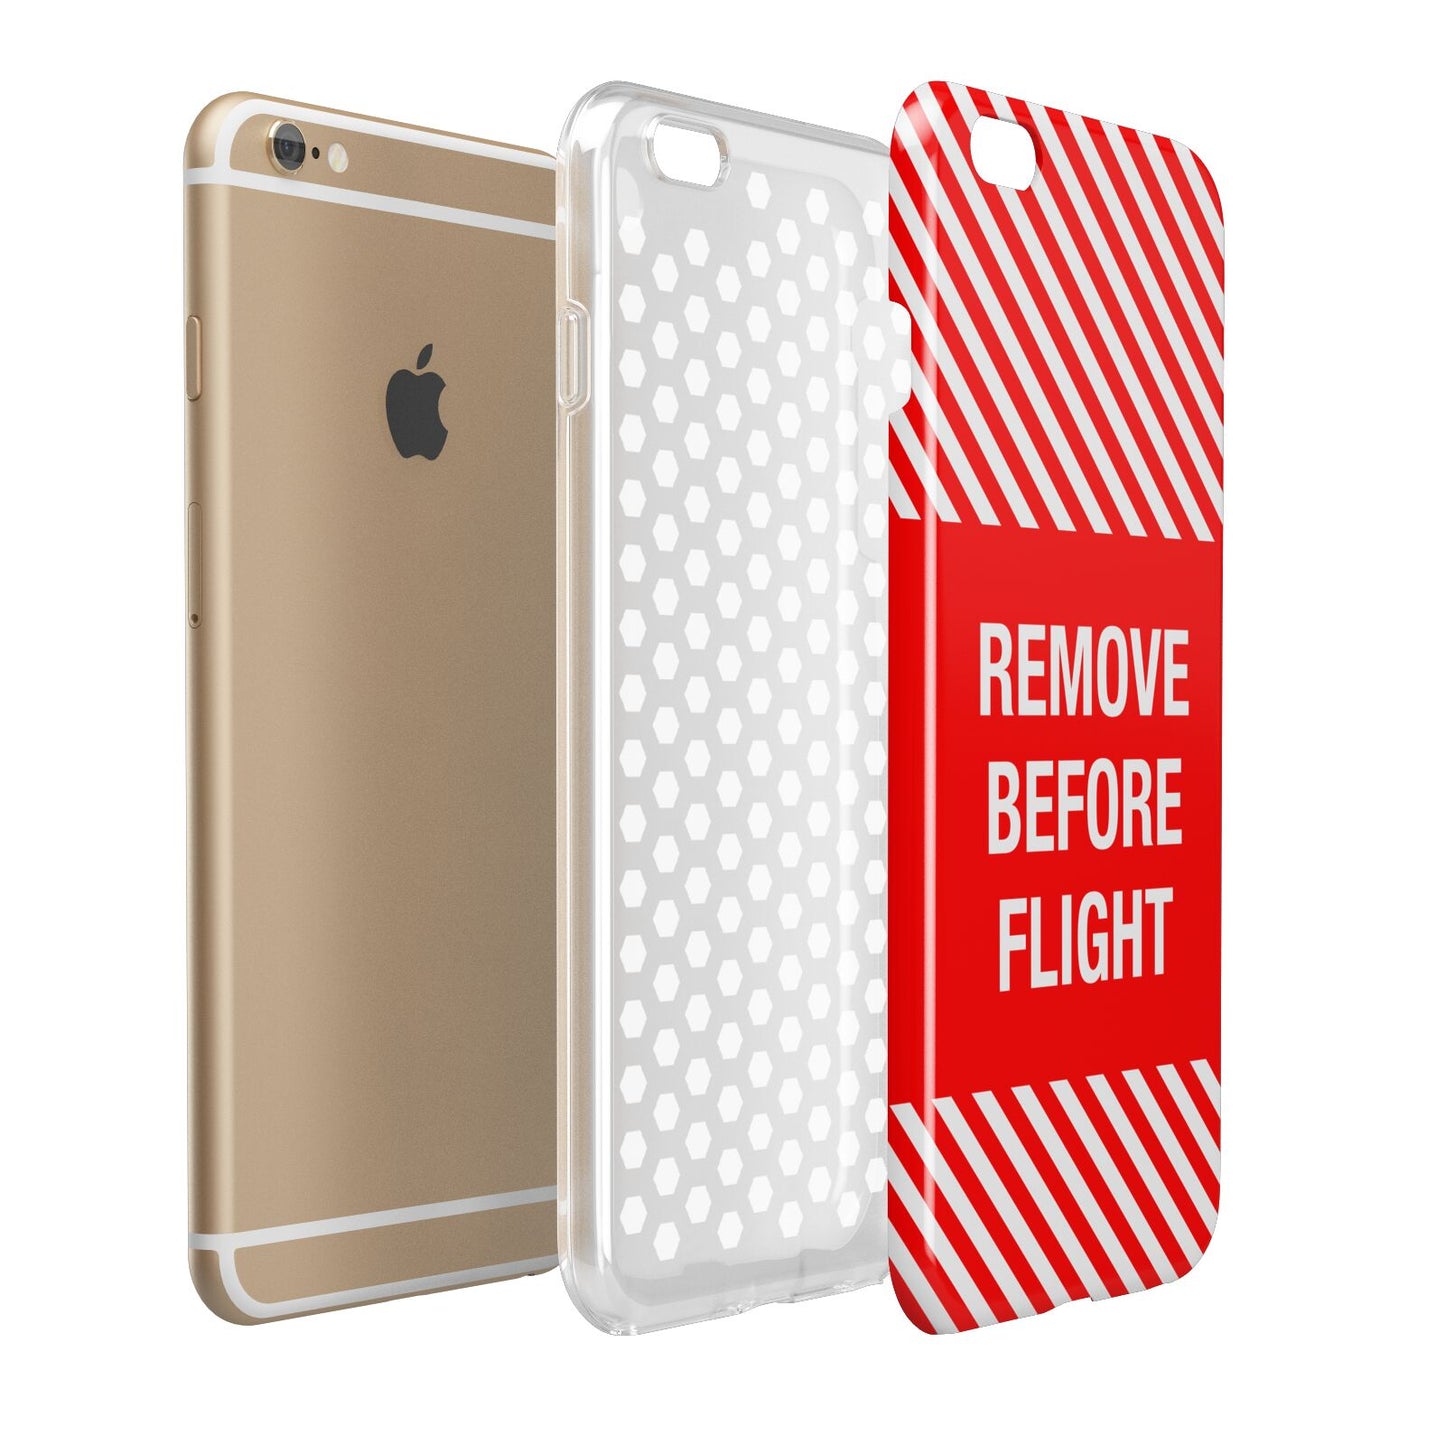 Remove Before Flight Apple iPhone 6 Plus 3D Tough Case Expand Detail Image